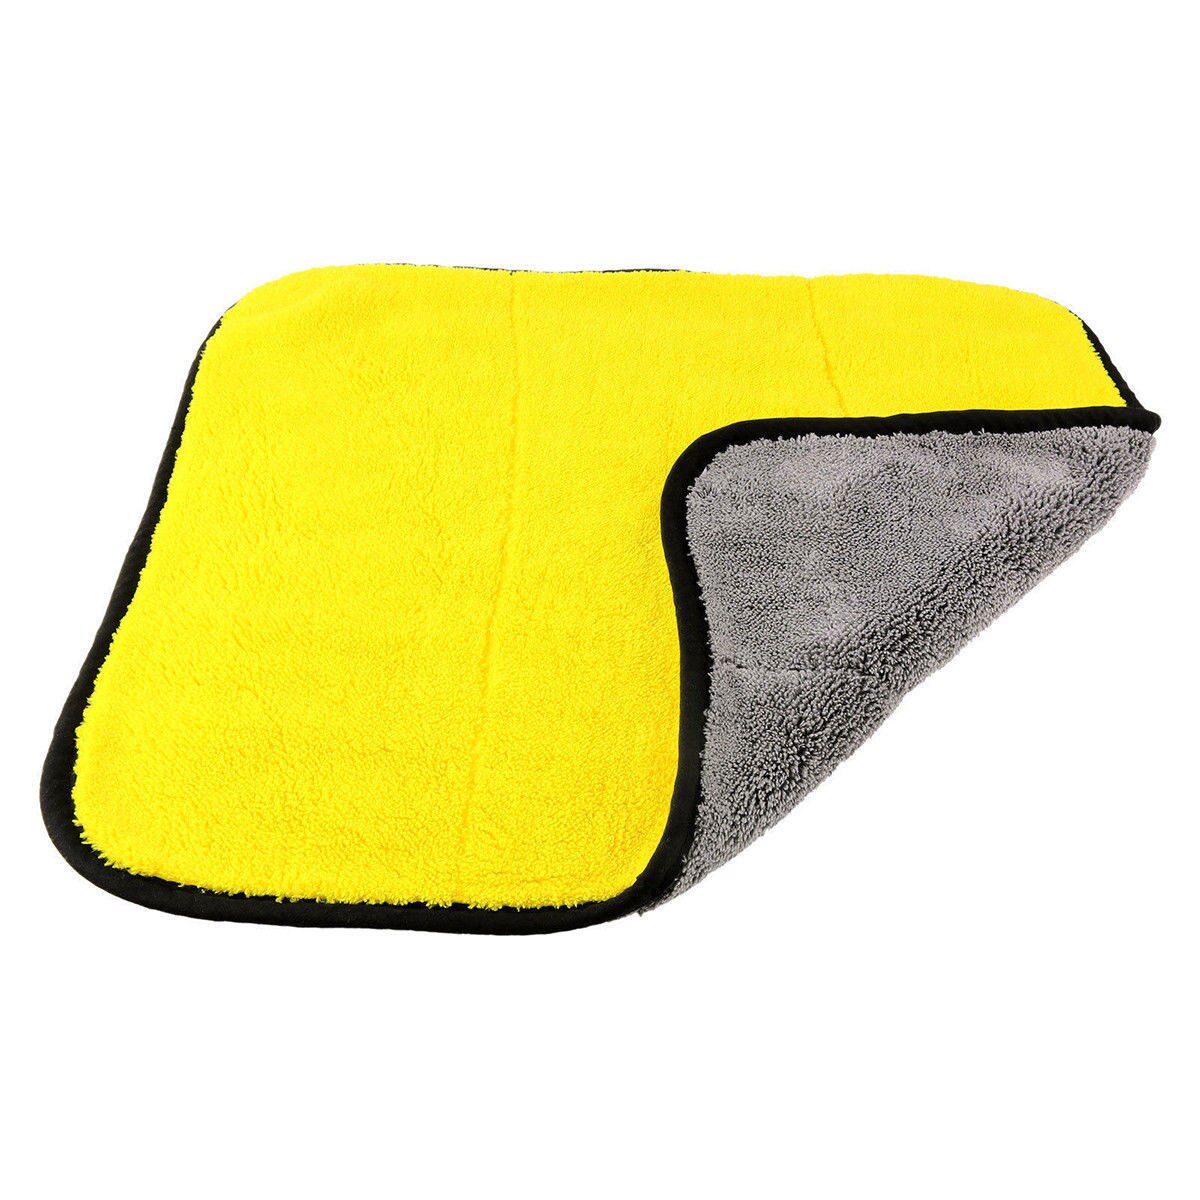 4 størrelse superabsorberende bilvaskeklud mikrofiberhåndklæde rengøring tørringsklude klude, der beskriver bilhåndklæde bilpleje polering: 30 x 30cm